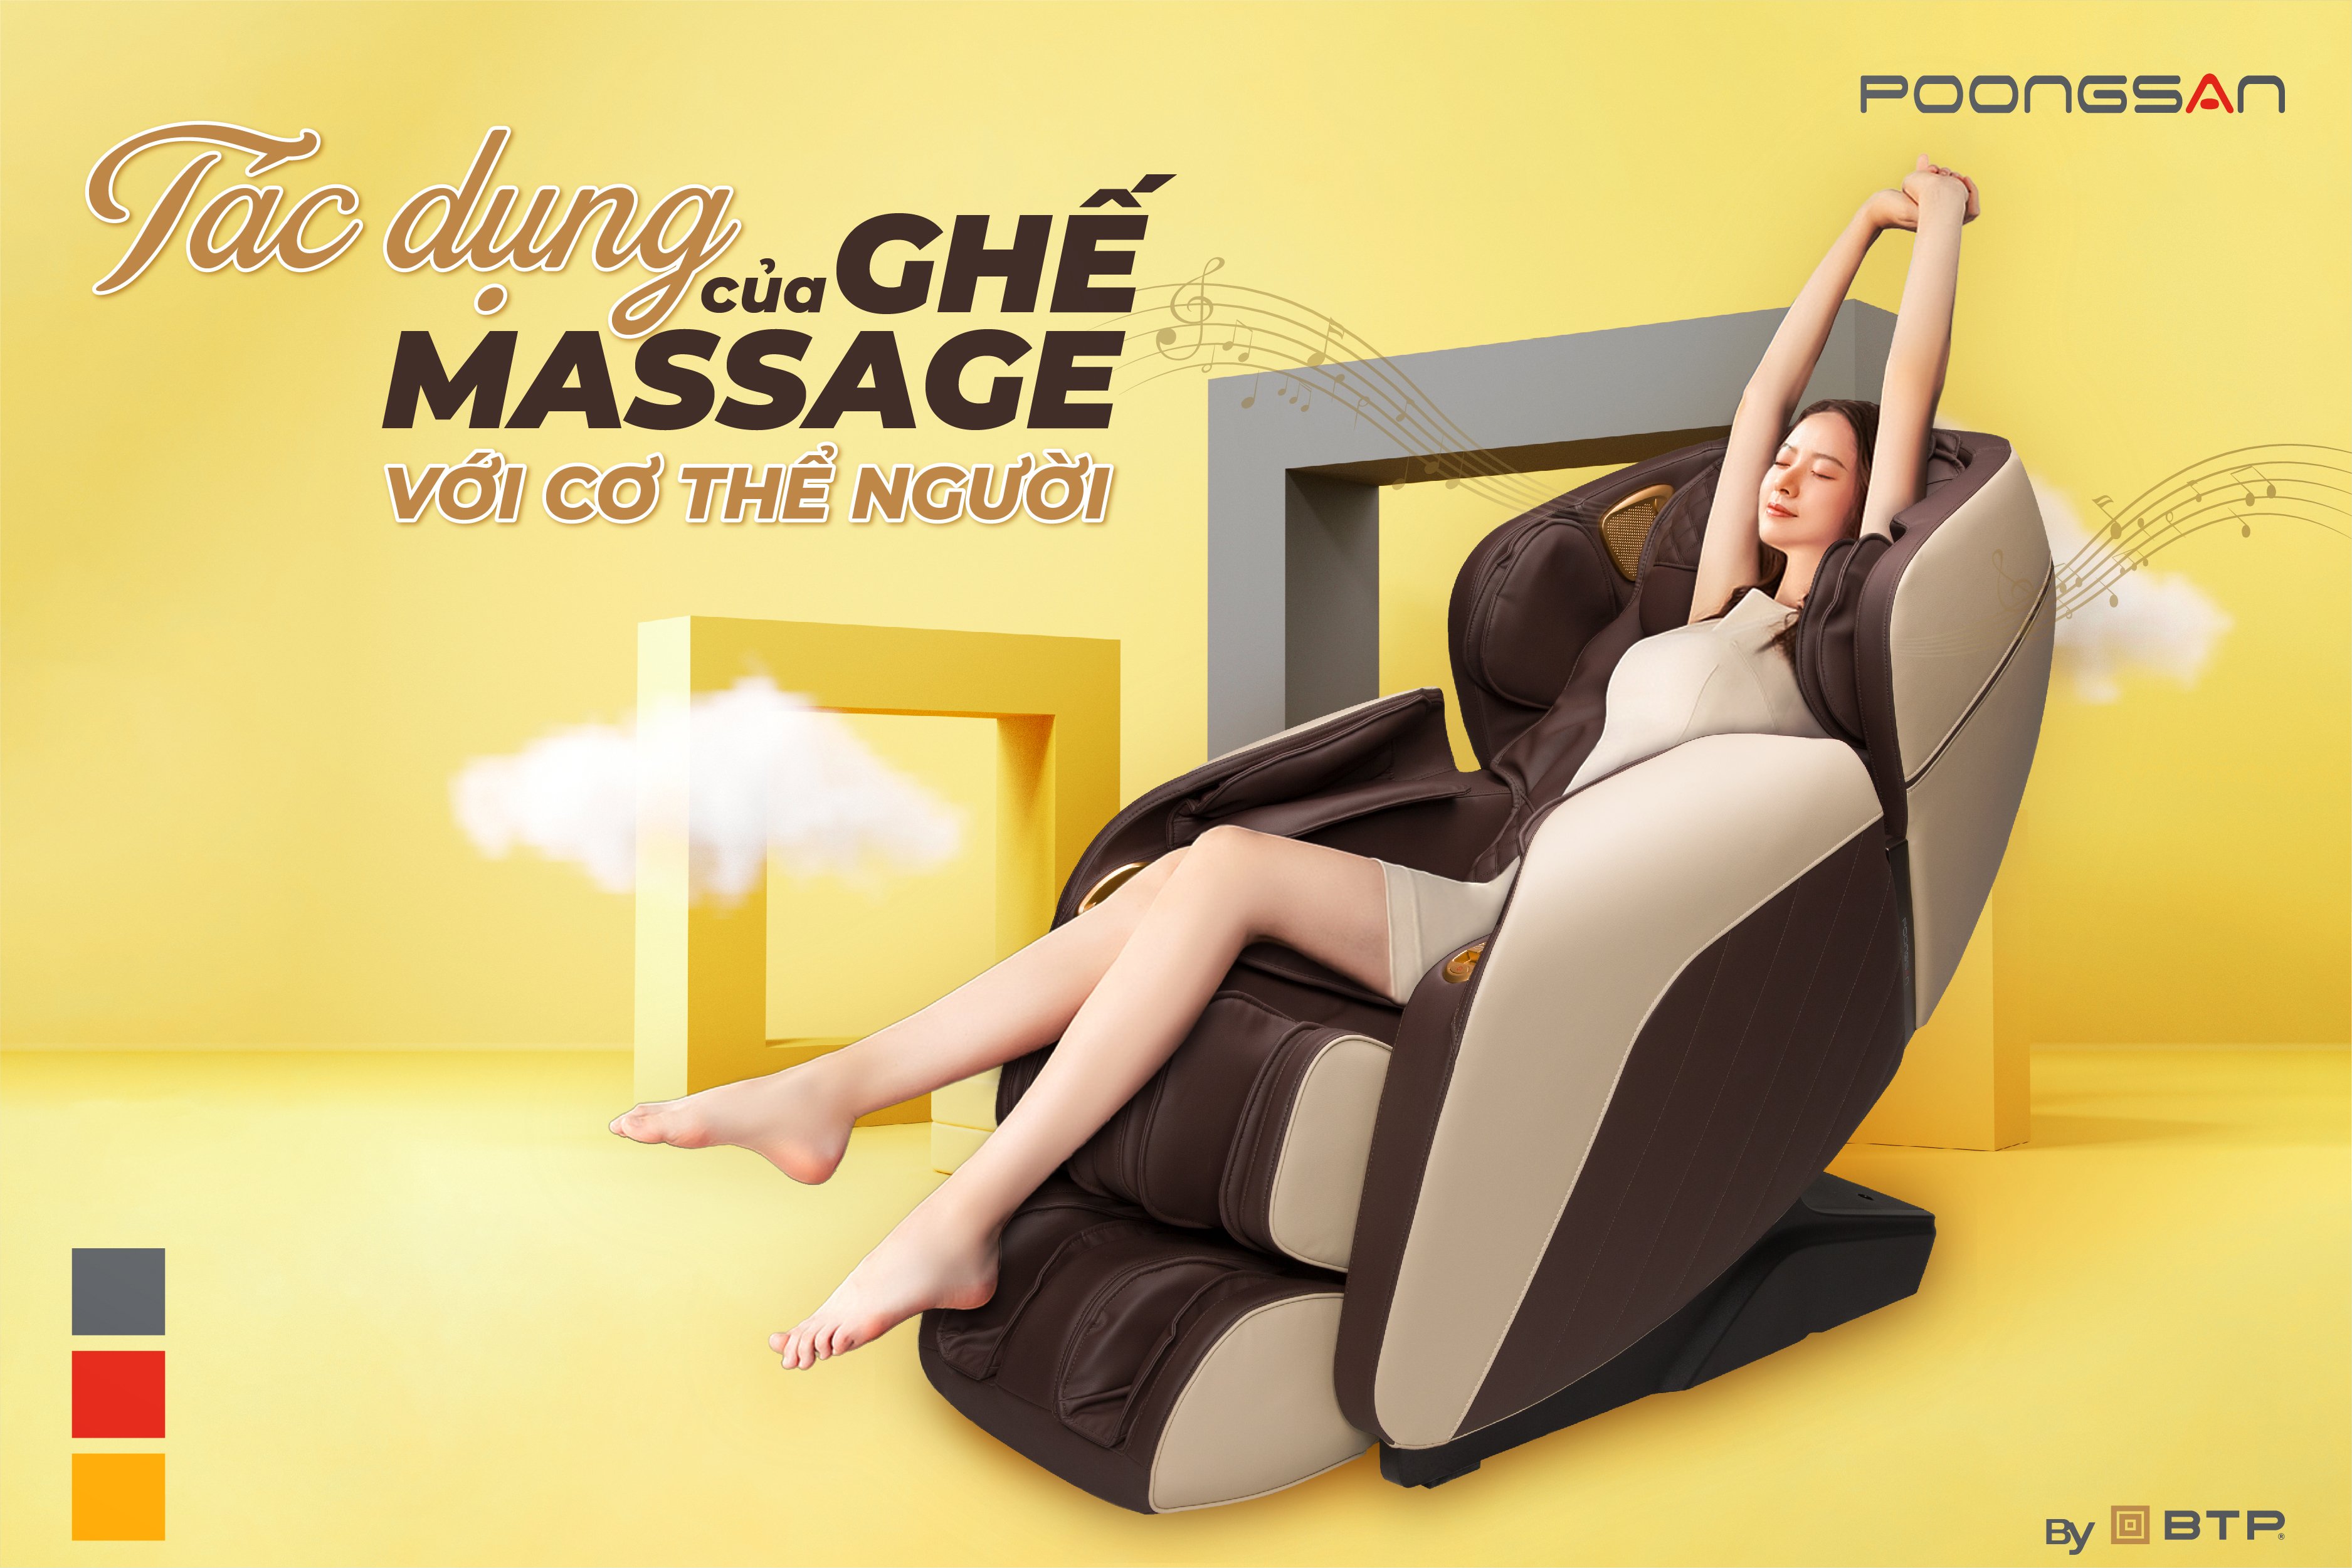 Tác dụng của ghế massage với cơ thể người